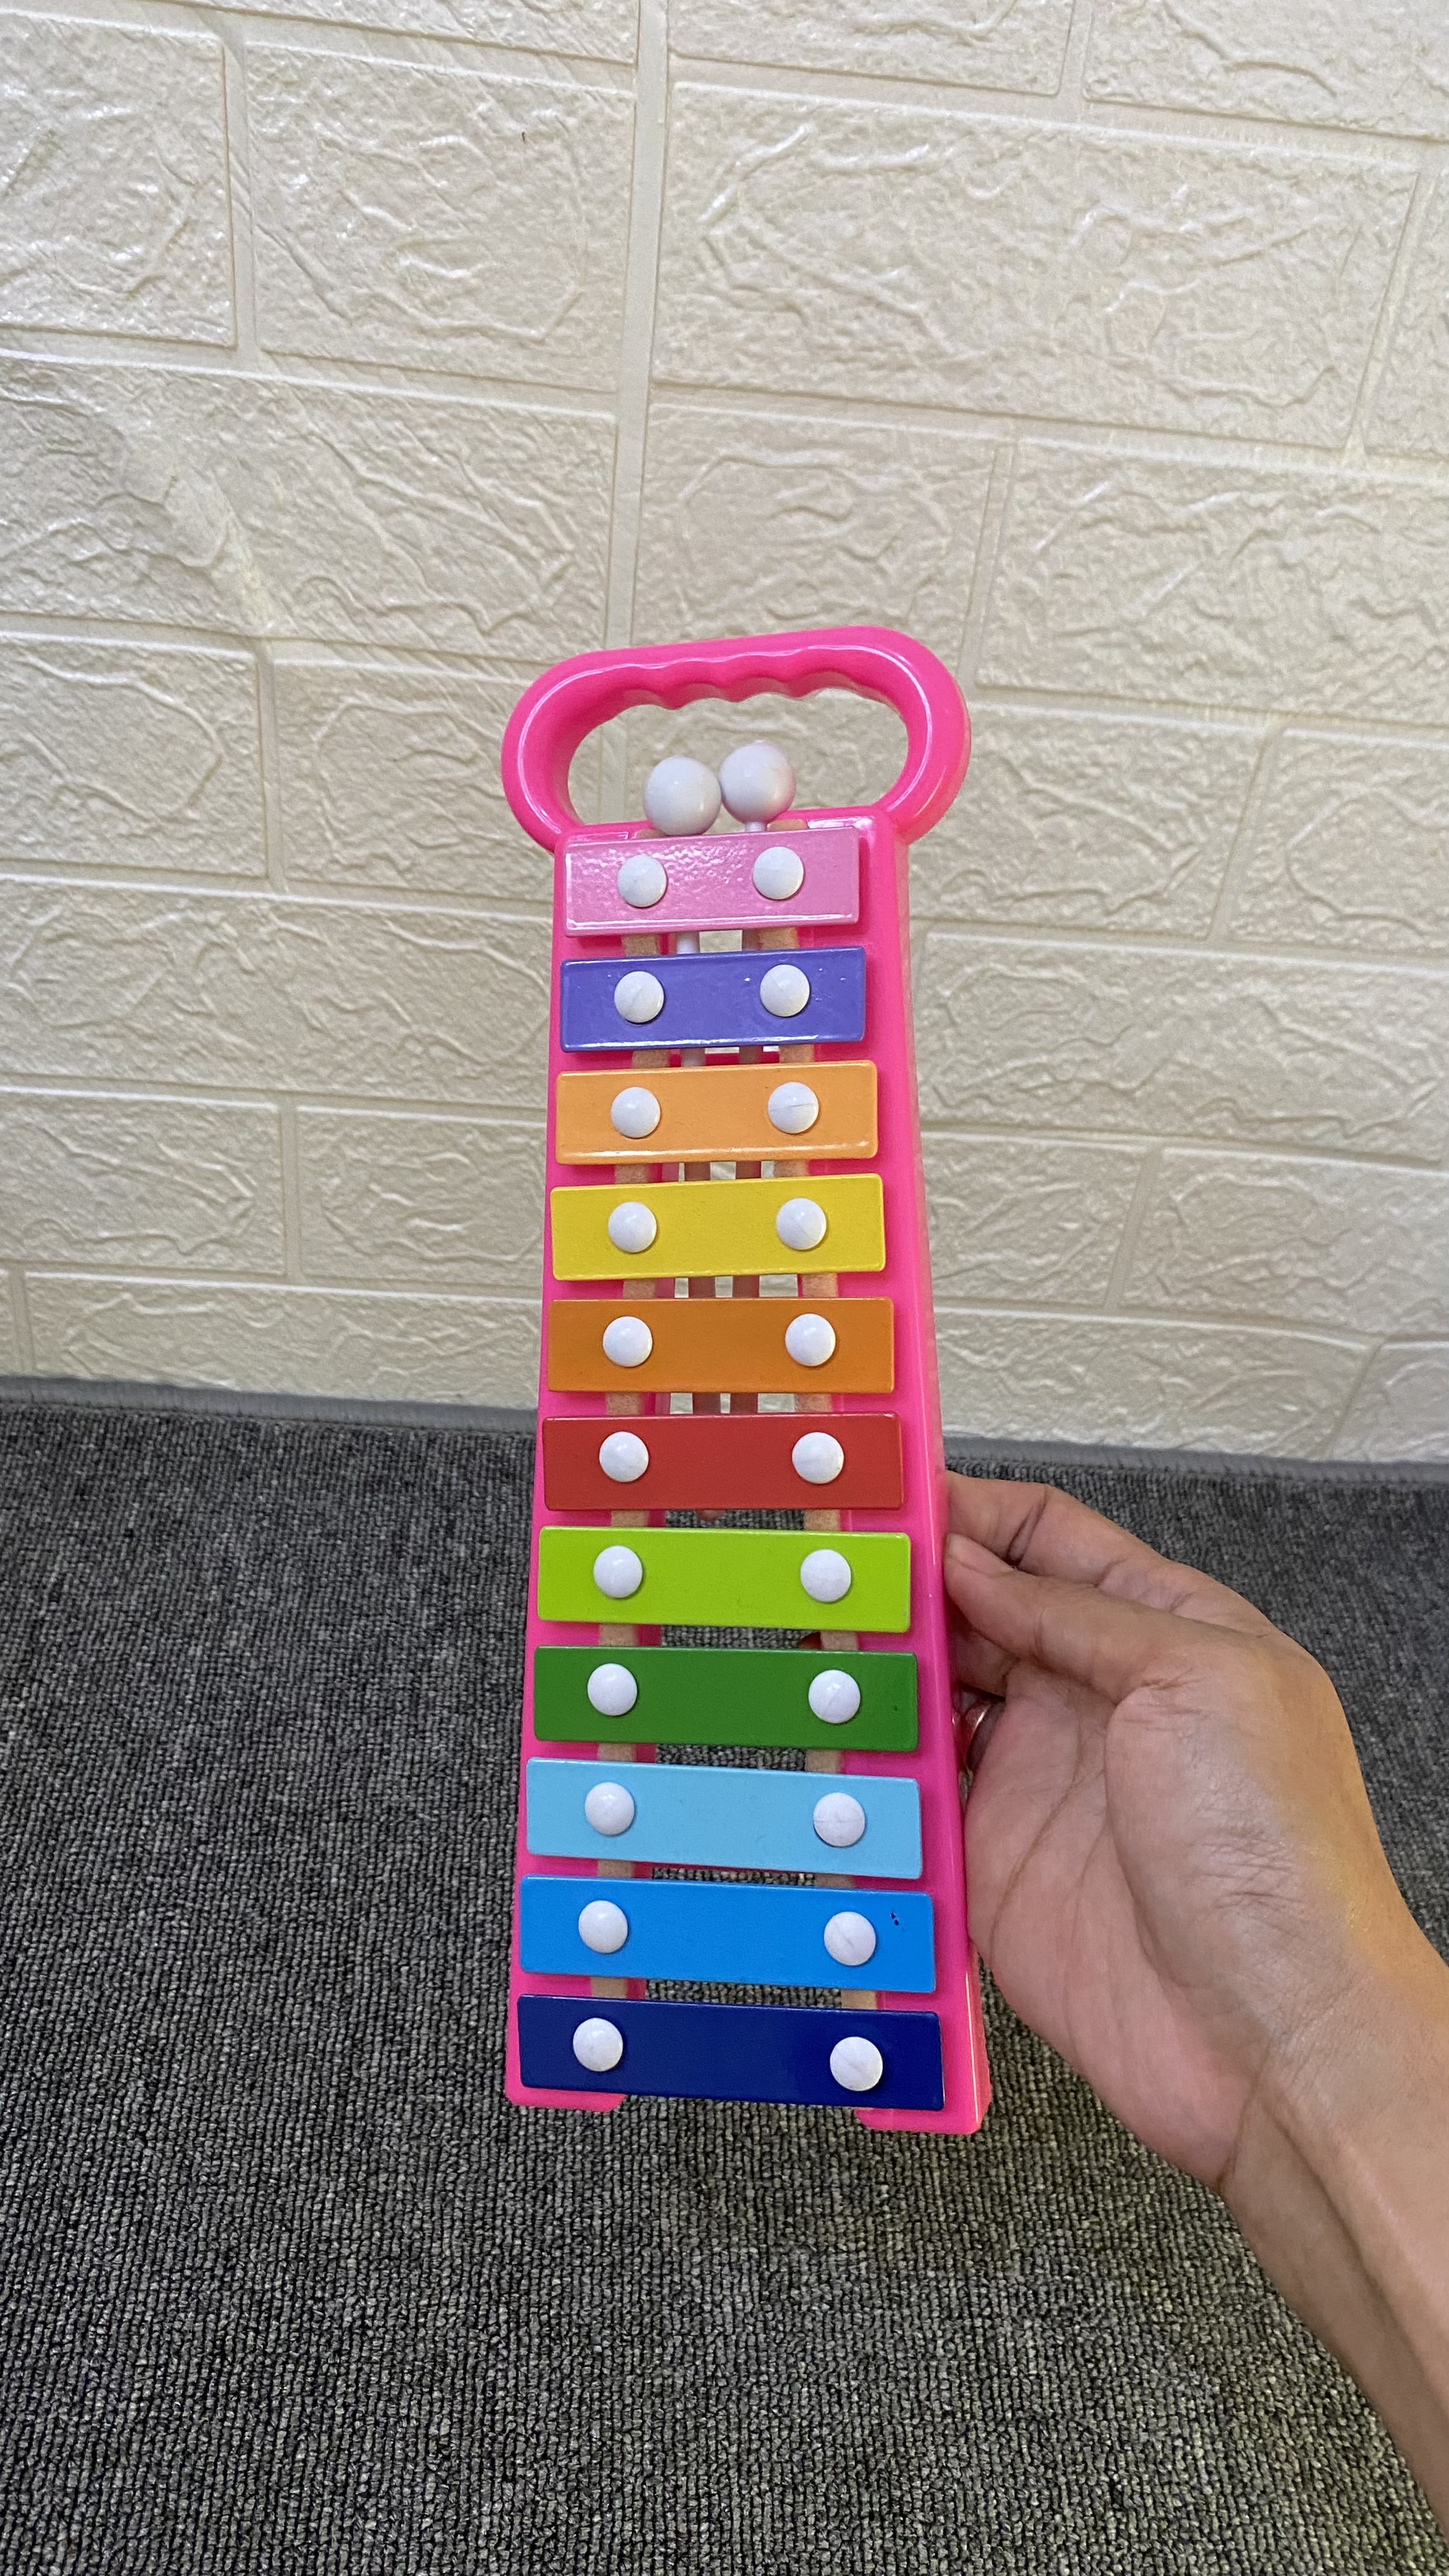 25. Mainan edukasi xylophone